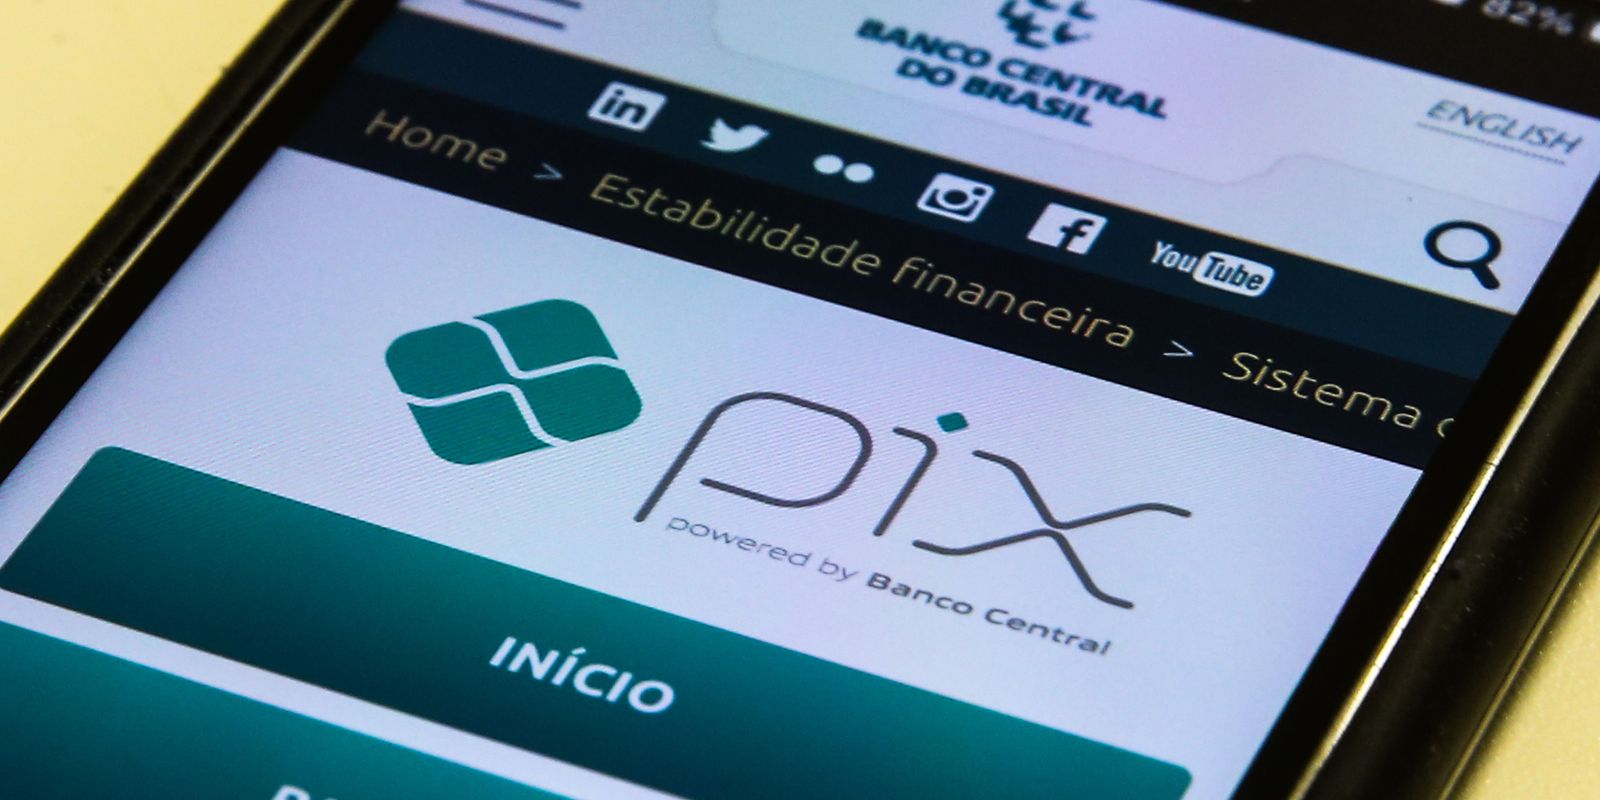 Pix bate recorde e supera 160 milhões de transações em um dia – finanças brasil